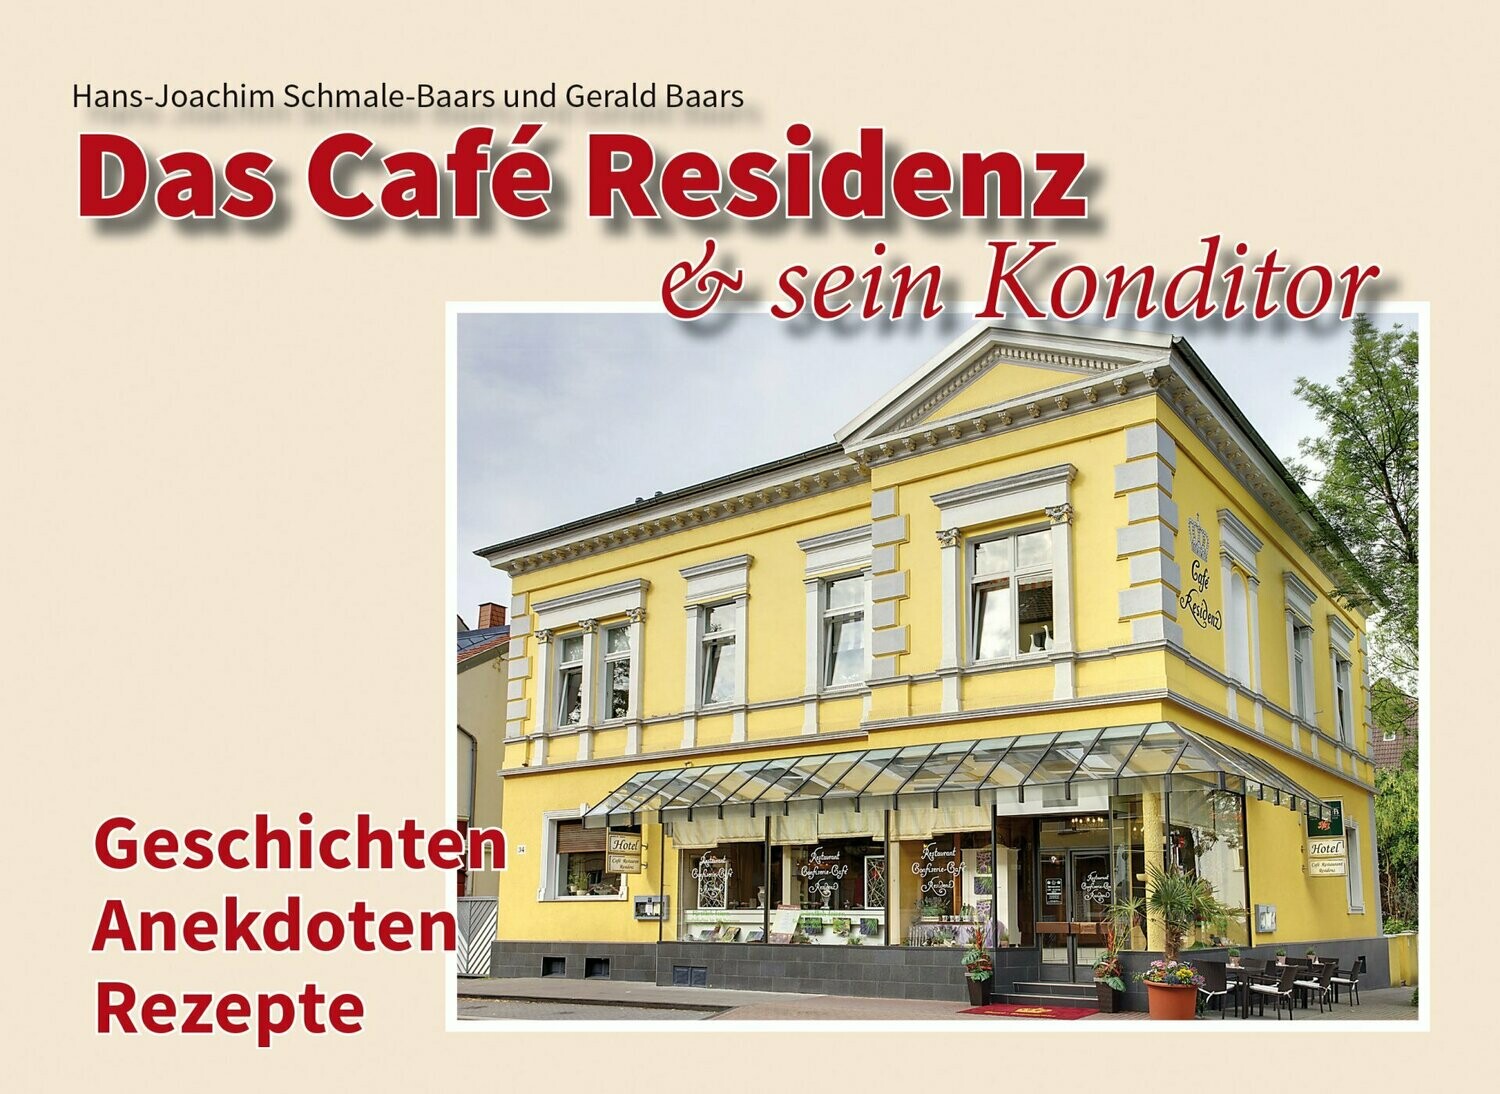 Das Café Residenz & sein Konditor